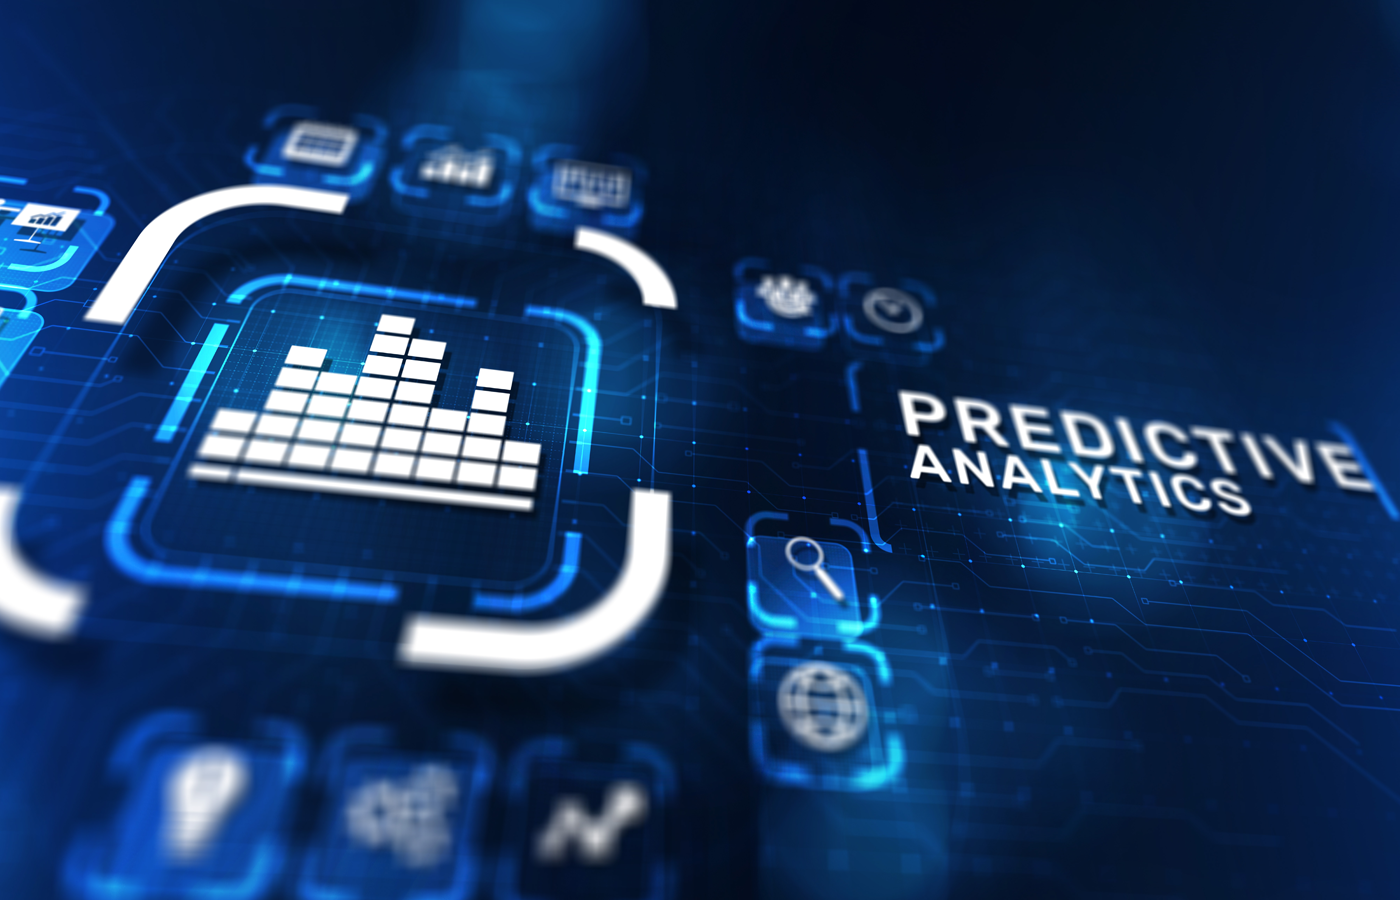 Predictive analytics concept on virtual screen.